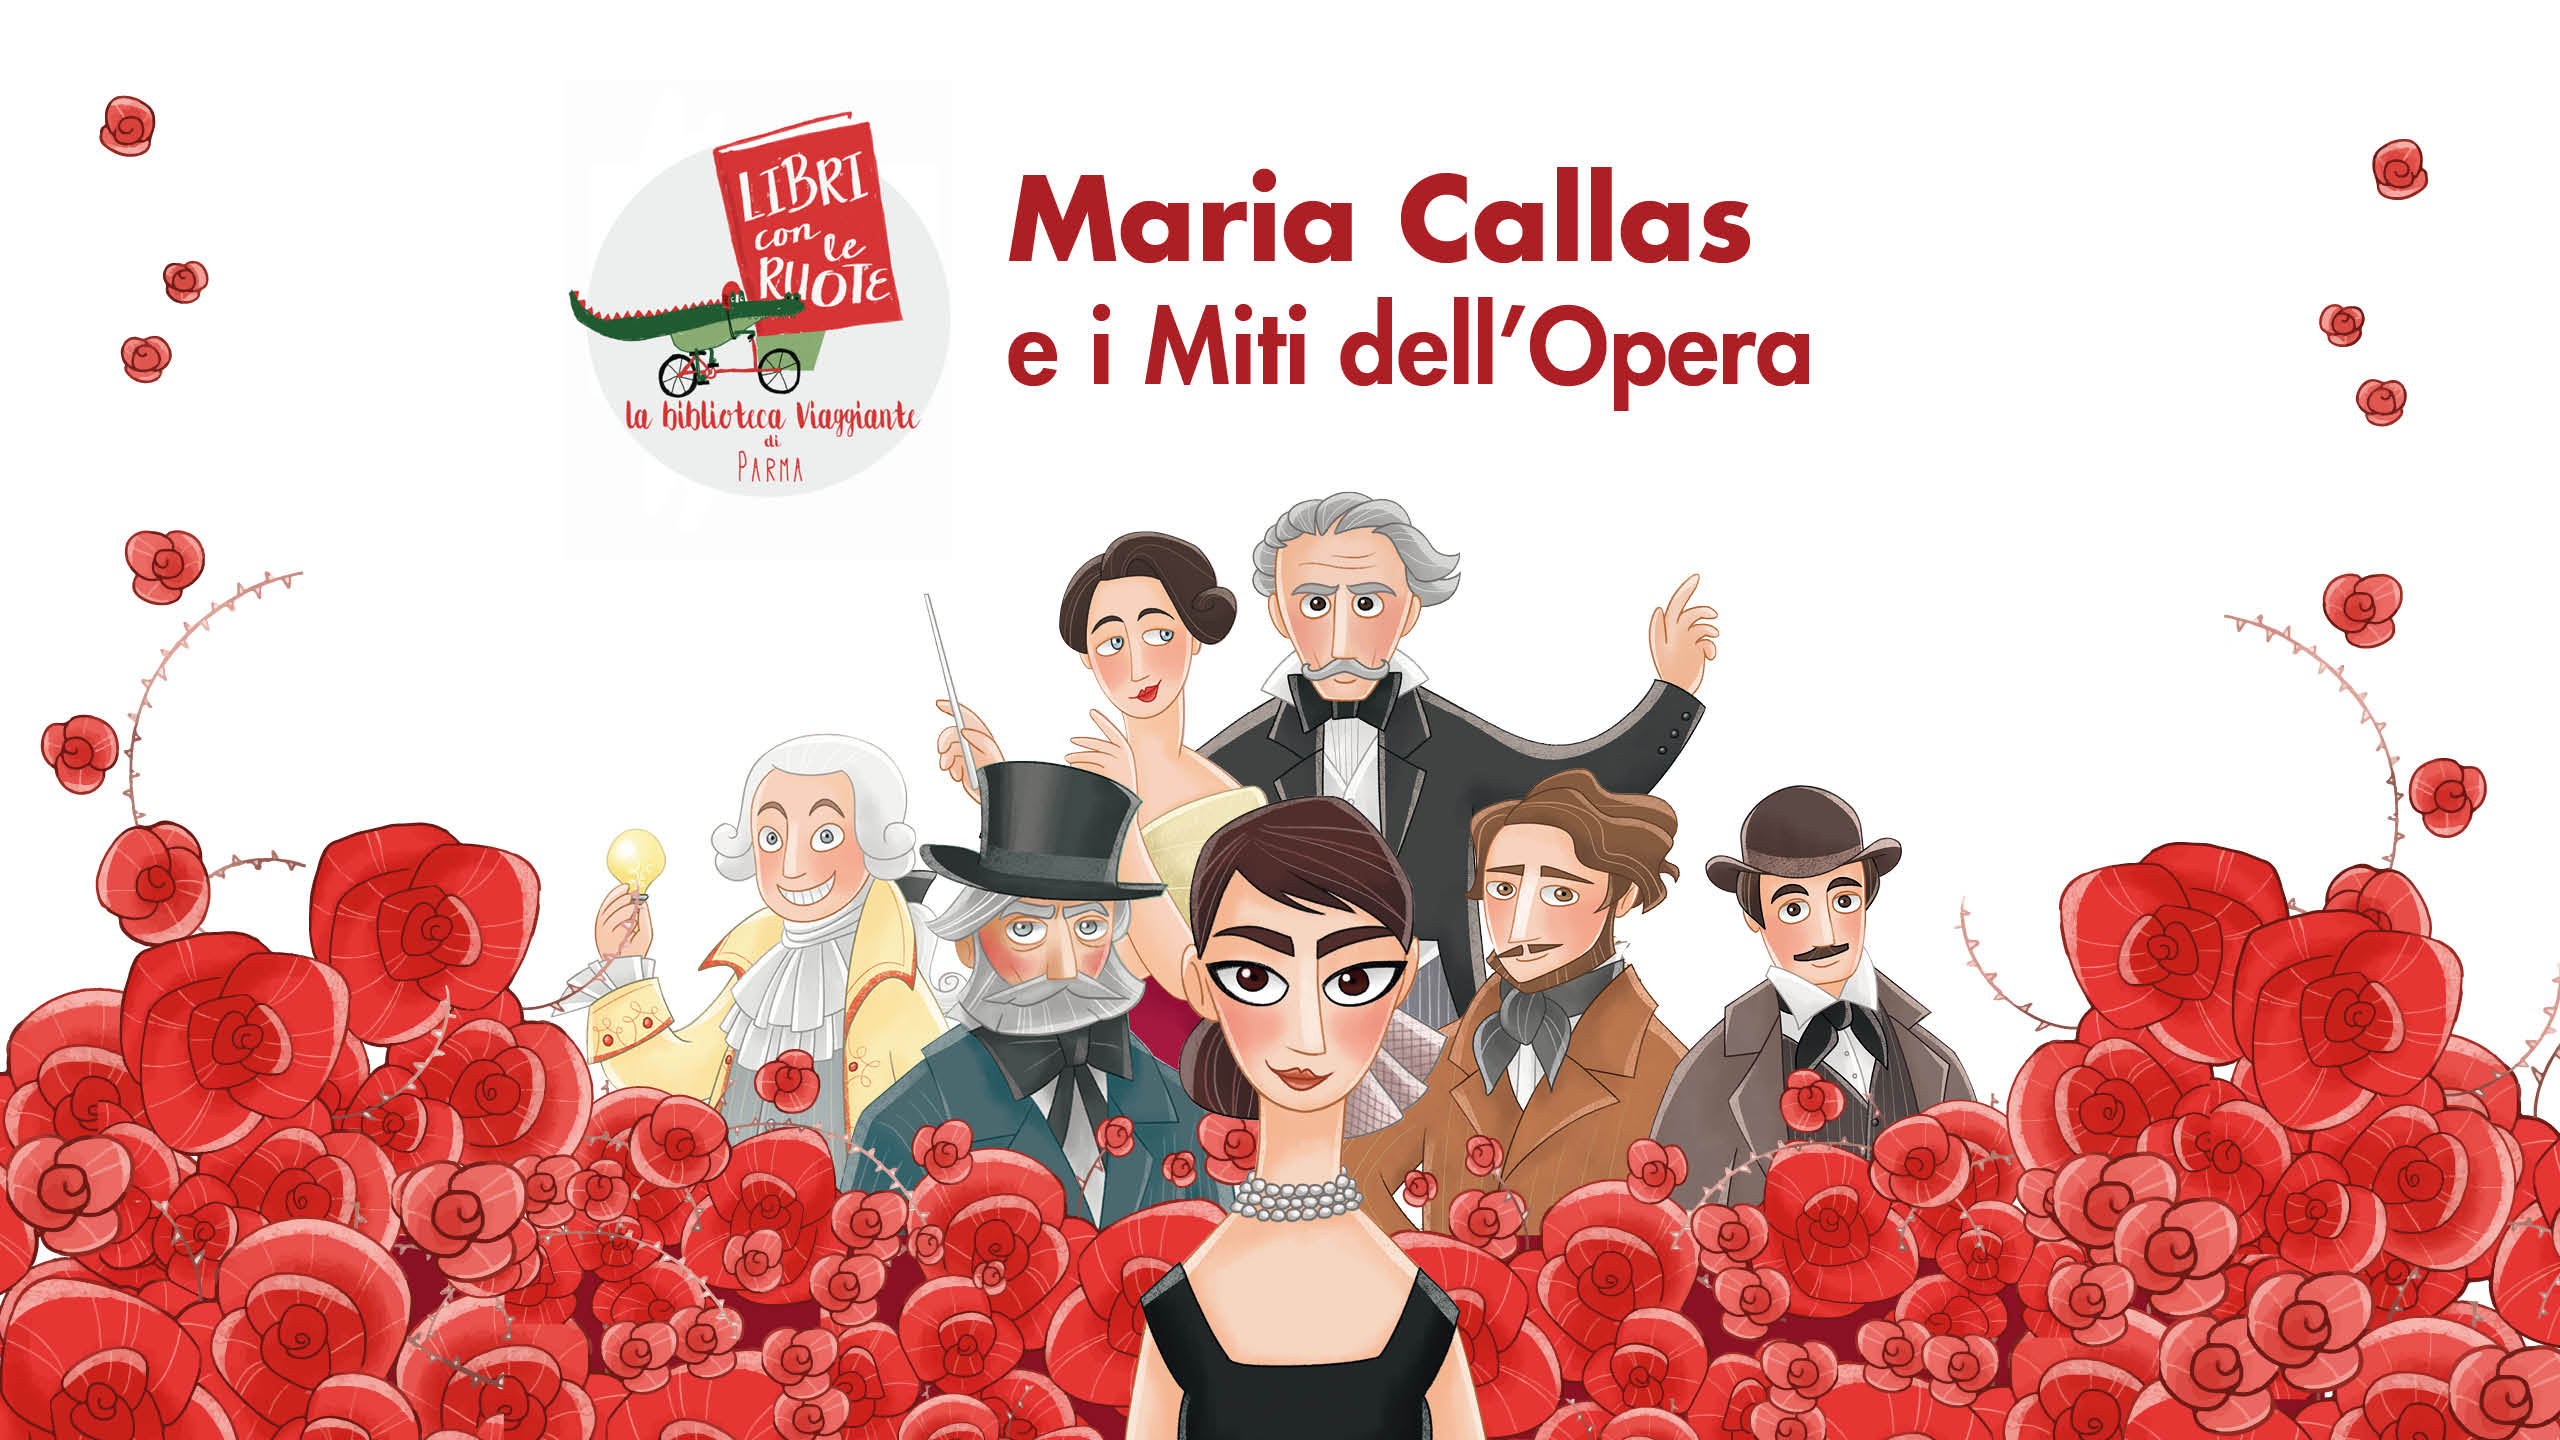 LIBRI CON LE RUOTE  Maria Callas e i miti dell’opera